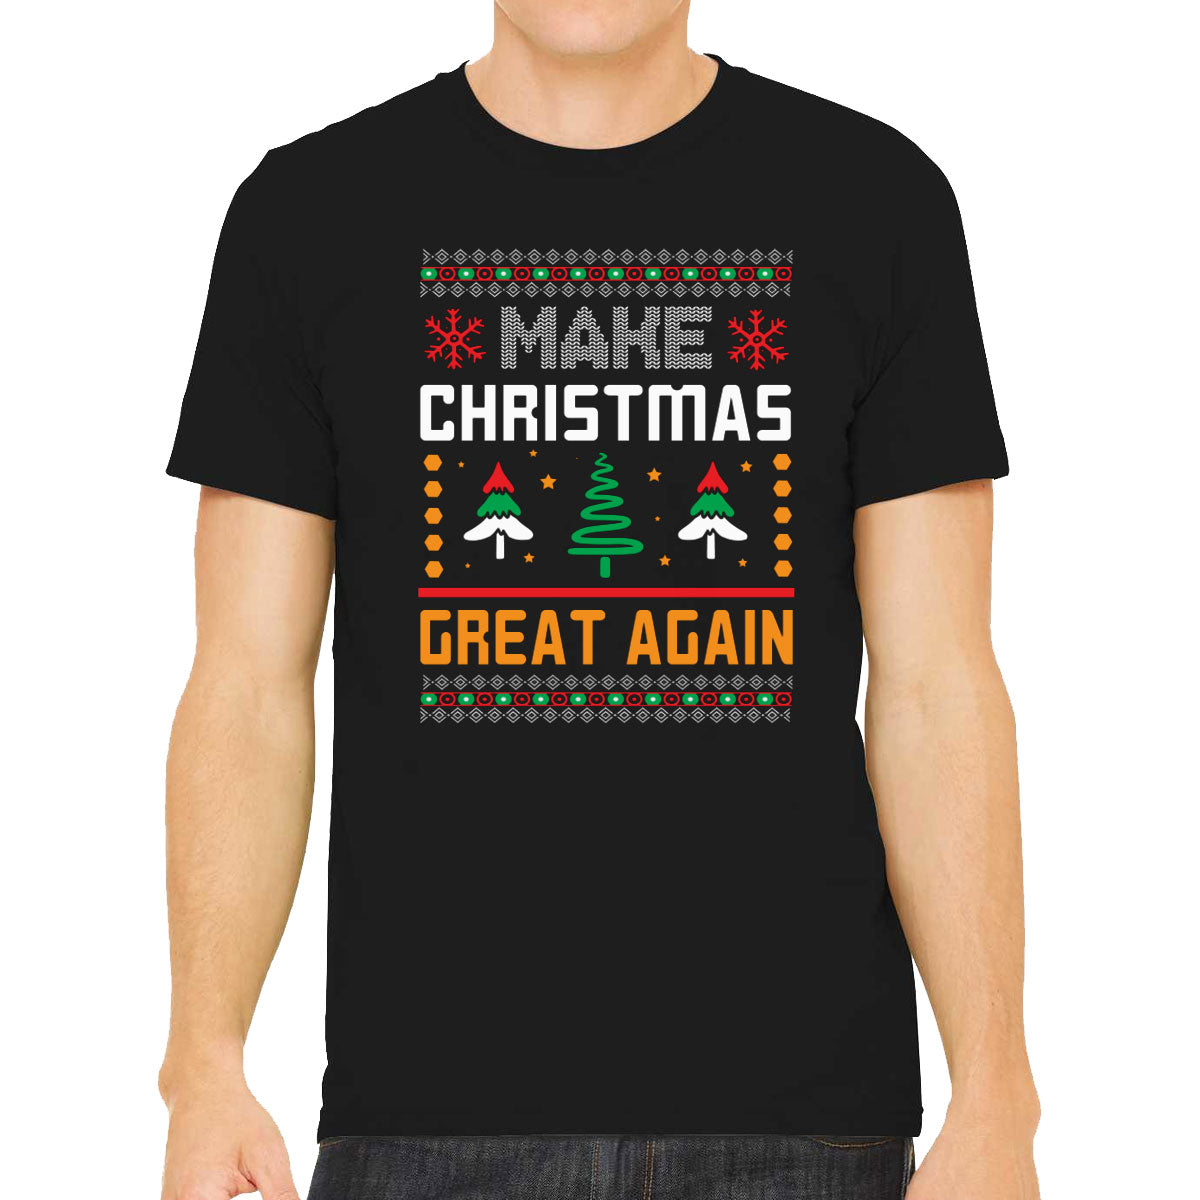 Make Christmas Great Again Men's T-shirt